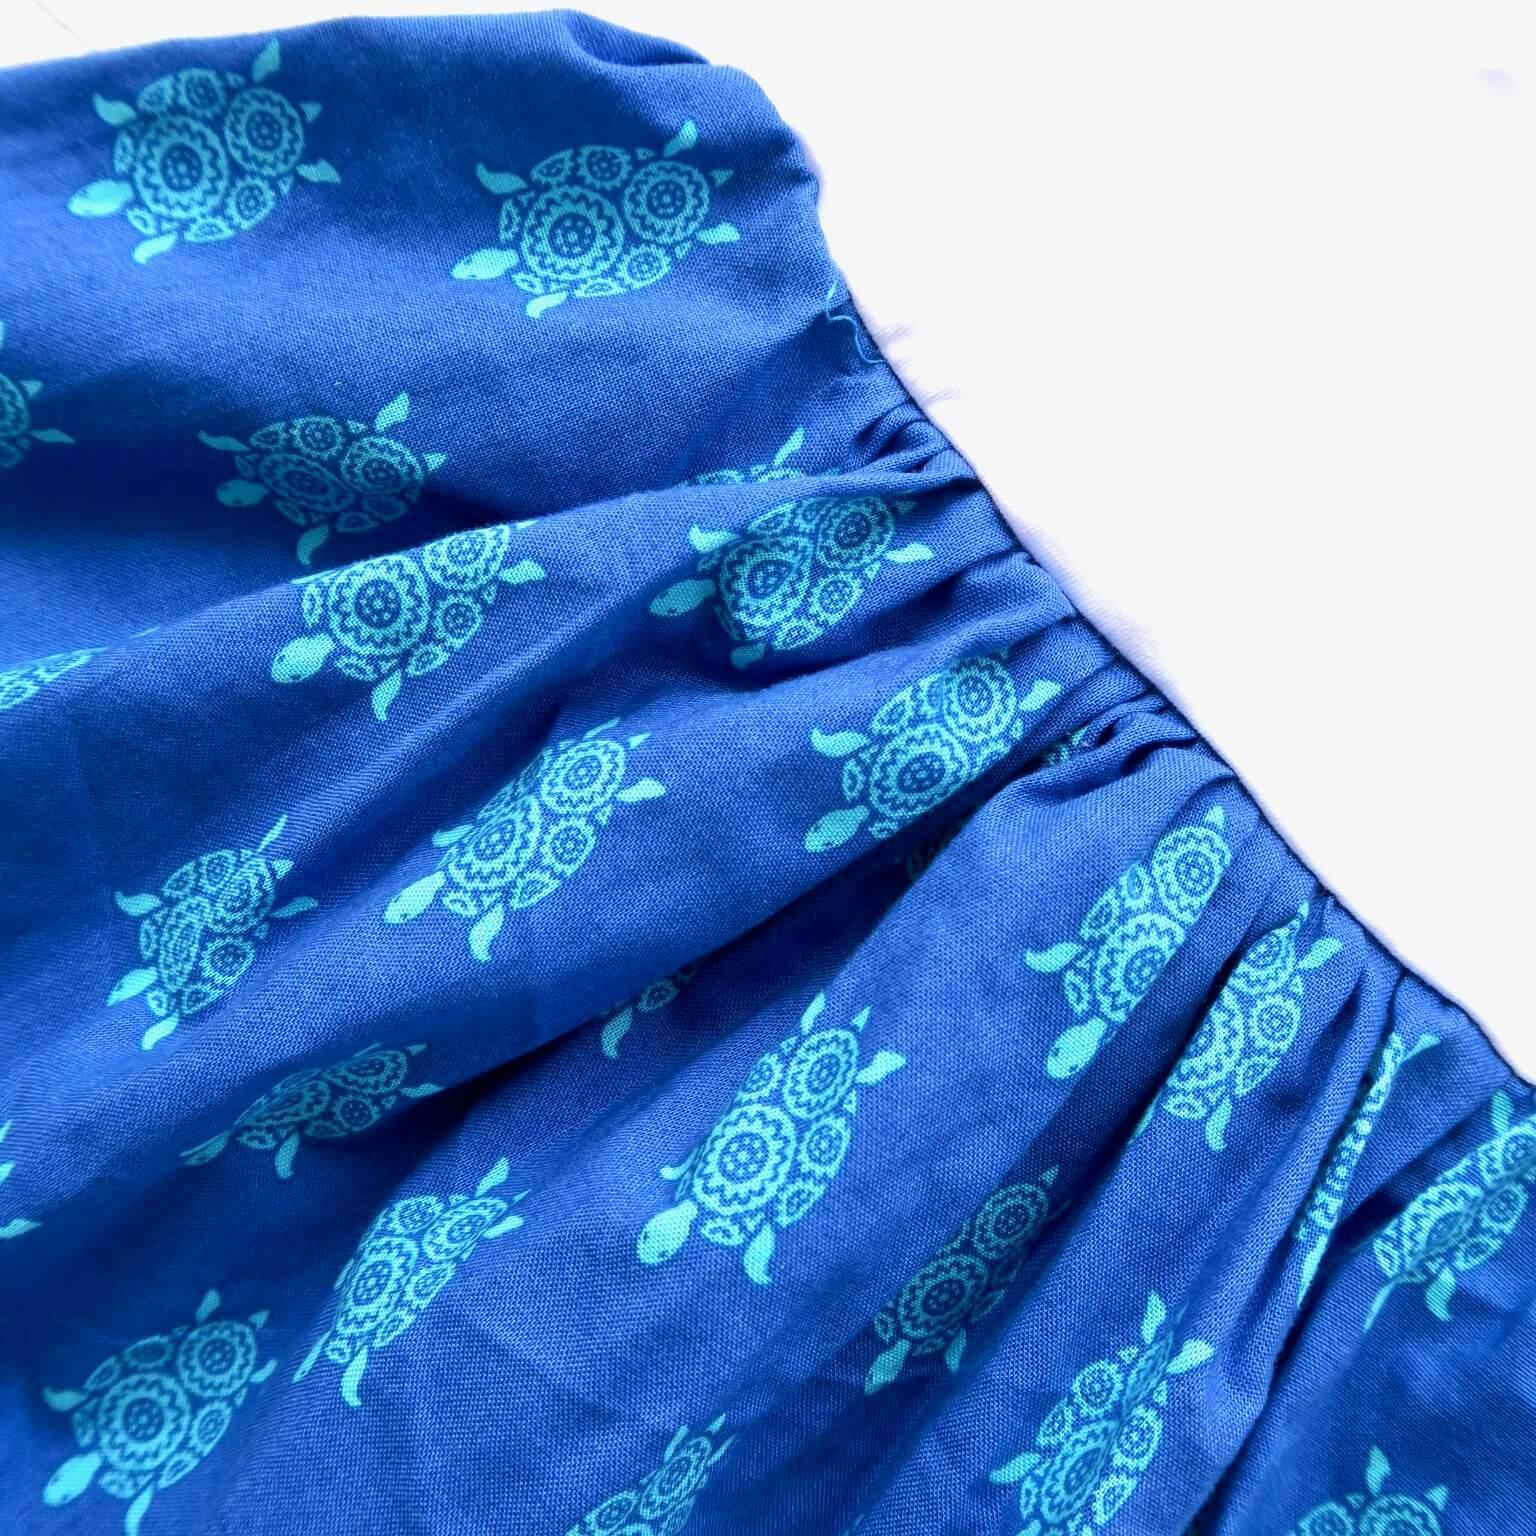 Dahlia Dress - Tie-Strap in Sea Turtle Print and White Cotton Stretch - Lil' Tati